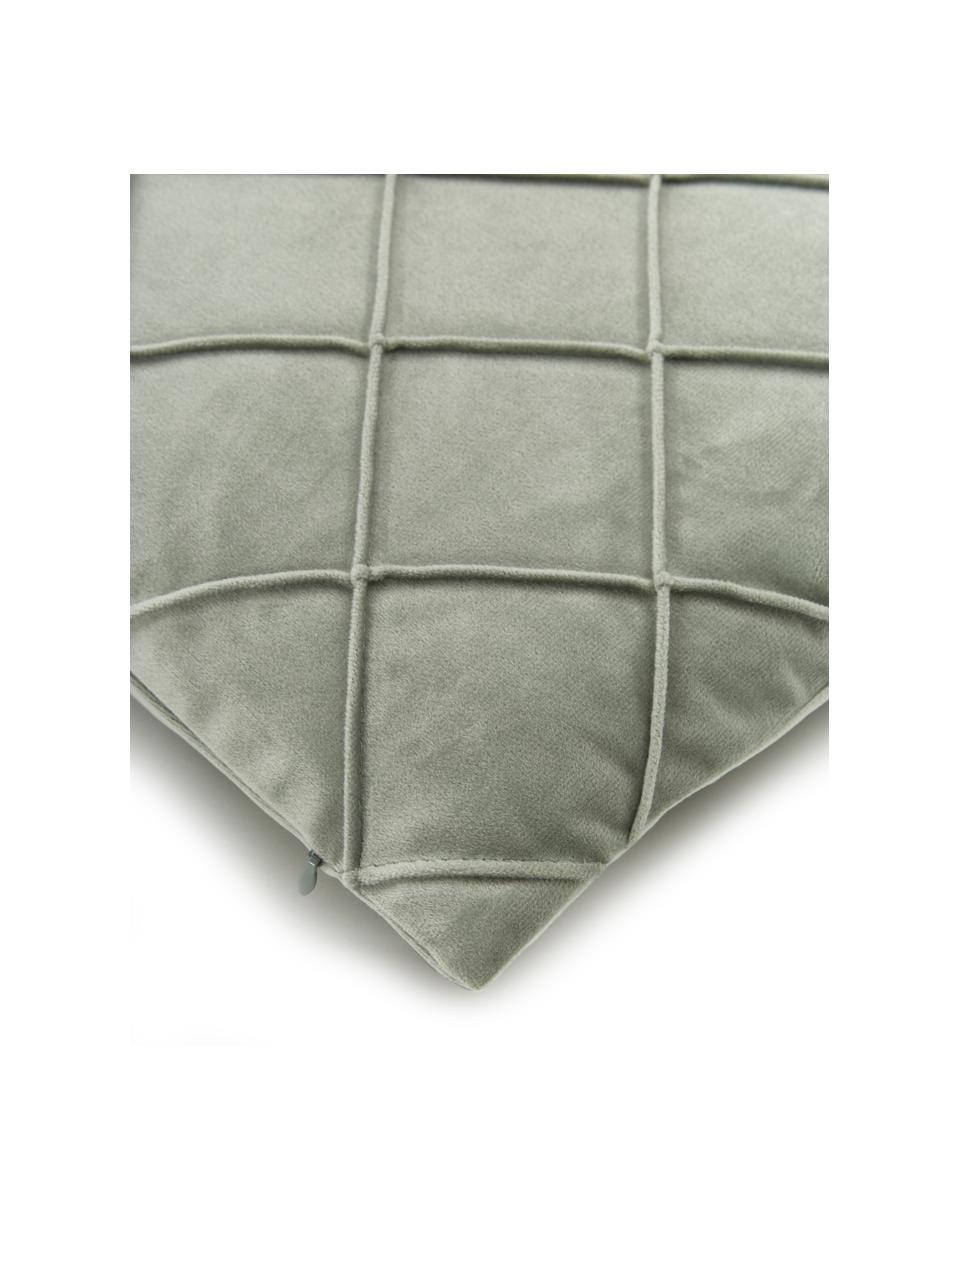 Fluwelen kussenhoes Luka in saliegroen met structuur-ruitpatroon, Fluweel (100% polyester), Saliegroen, B 30 x L 50 cm